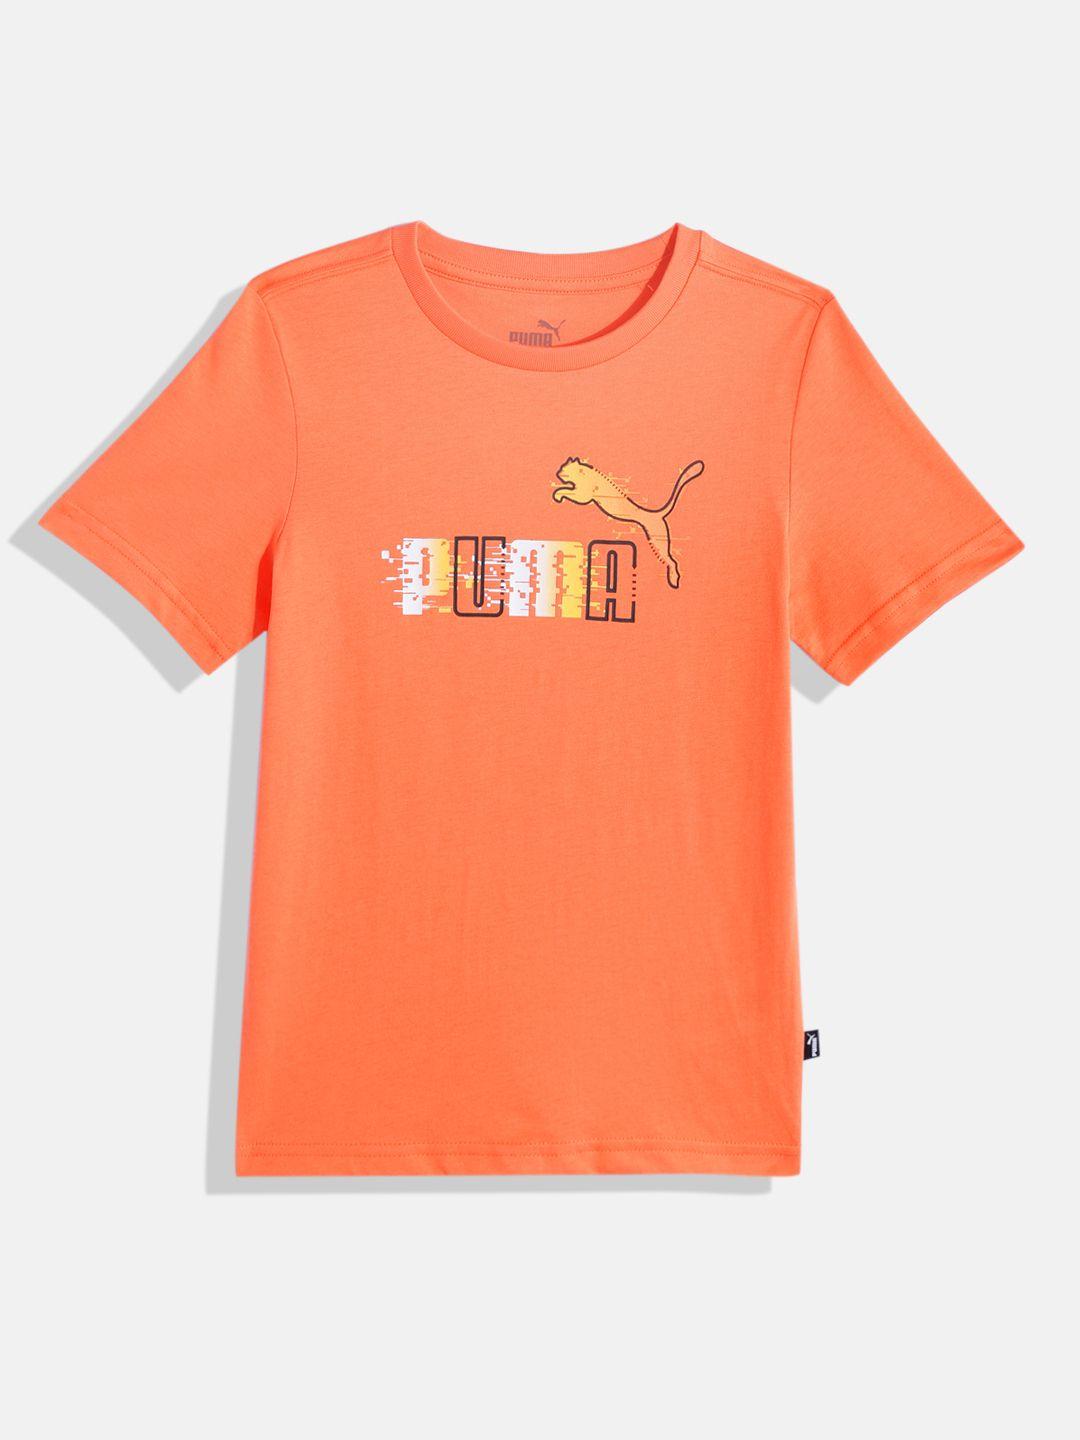 puma boys brand logo printed pure cotton ess+ t-shirt